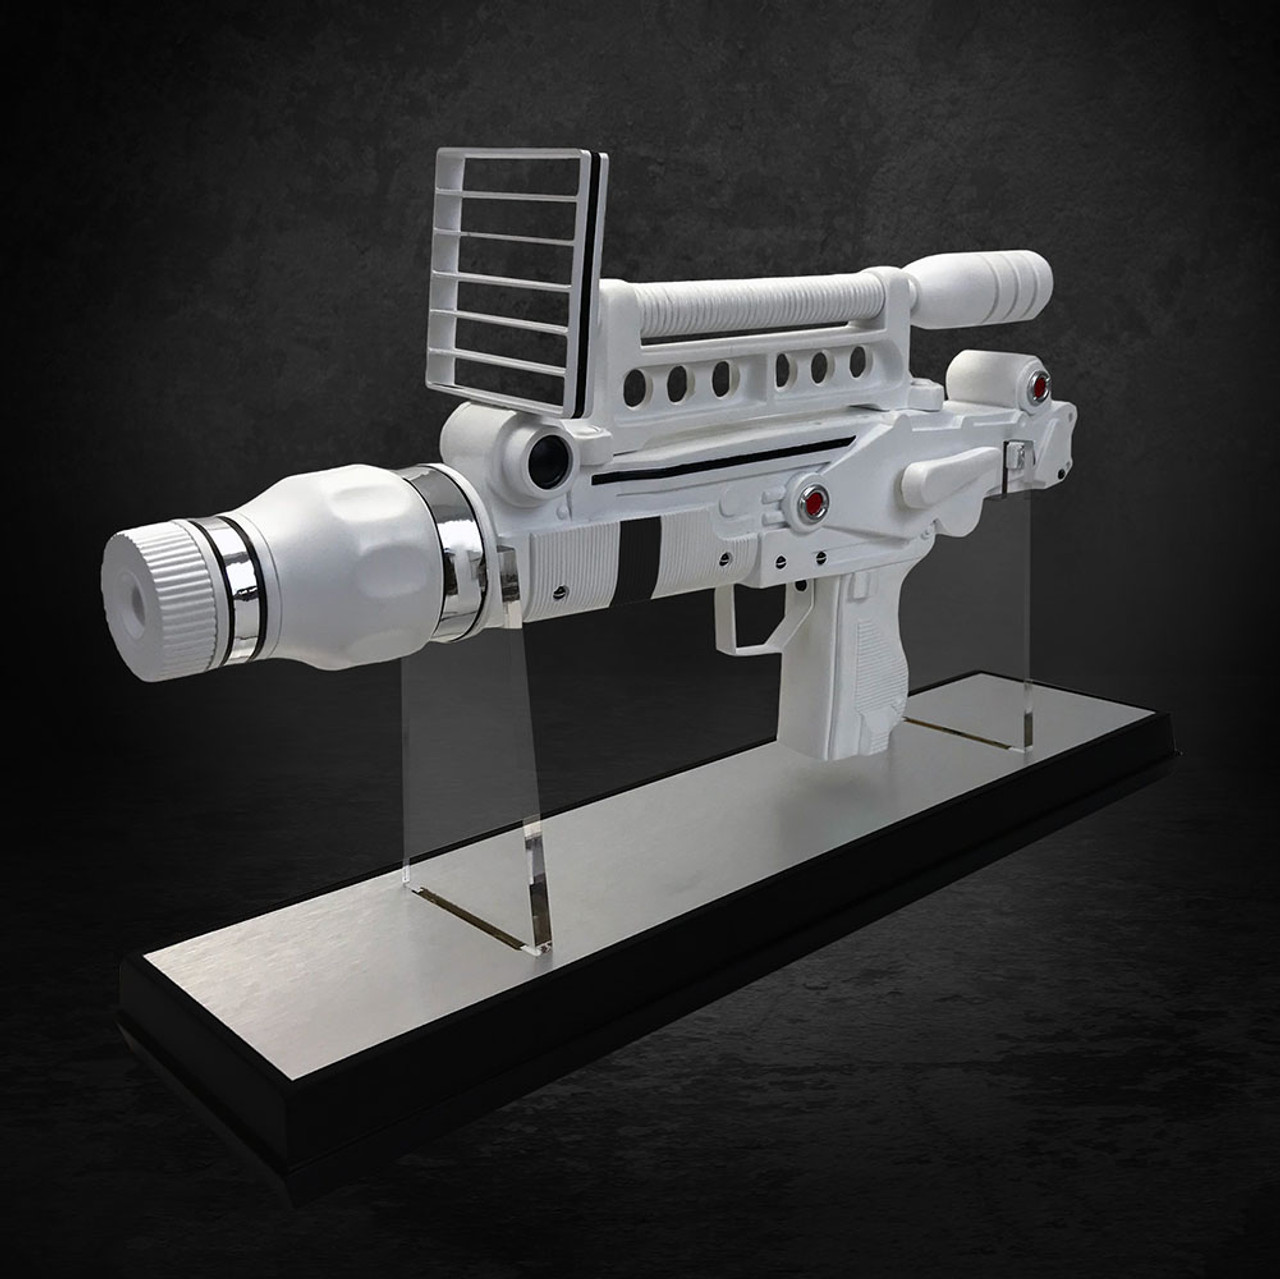 Factory Entertainment Moonraker Laser Gun 1:1 Scale Prop Replica 408885 1